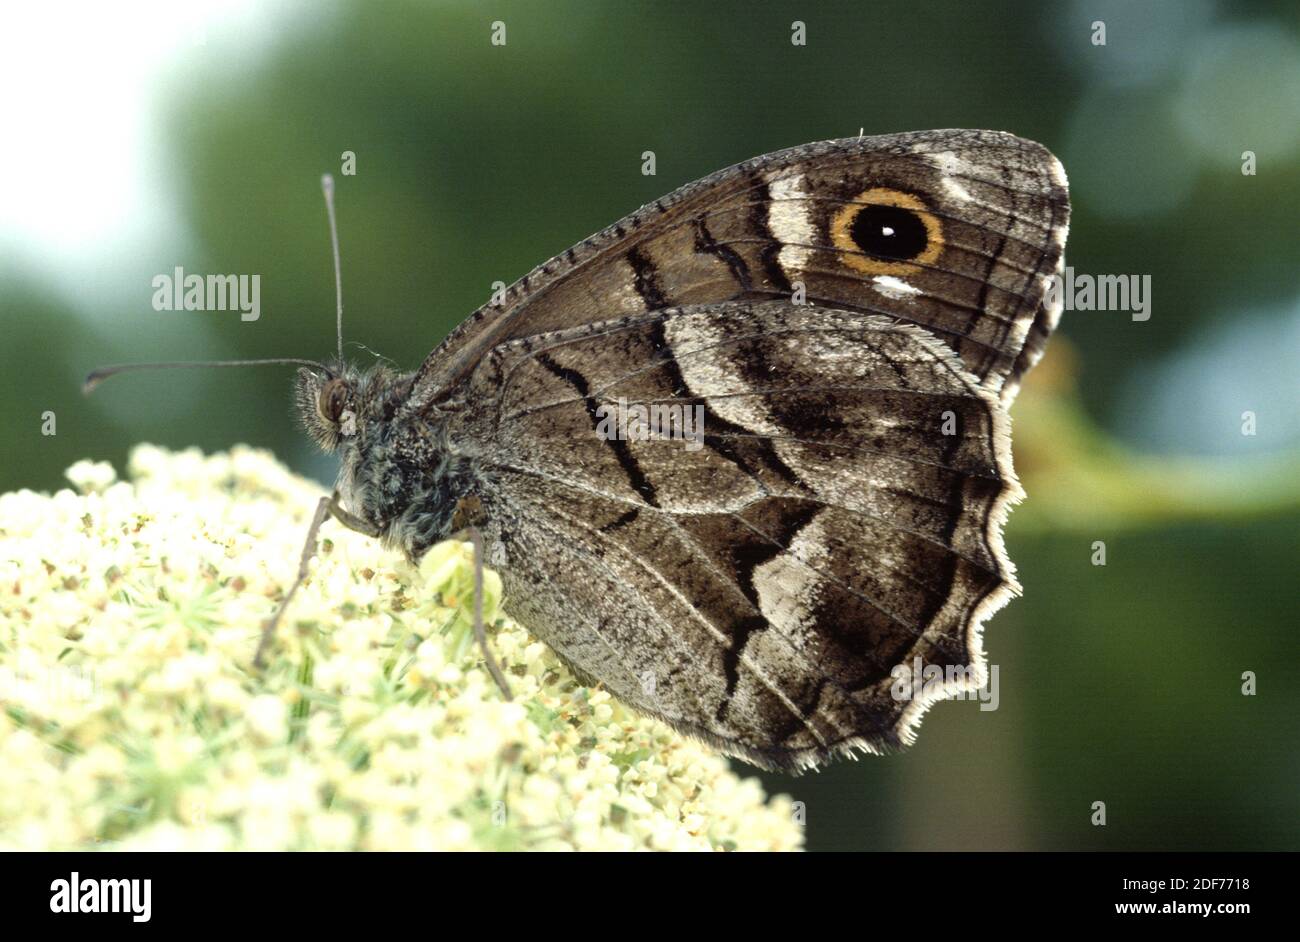 Il greyling a strisce (Hipparchia fidia o Pseudotergumia fidia) è una farfalla originaria del bacino del Mediterraneo occidentale. Adulto. Foto Stock